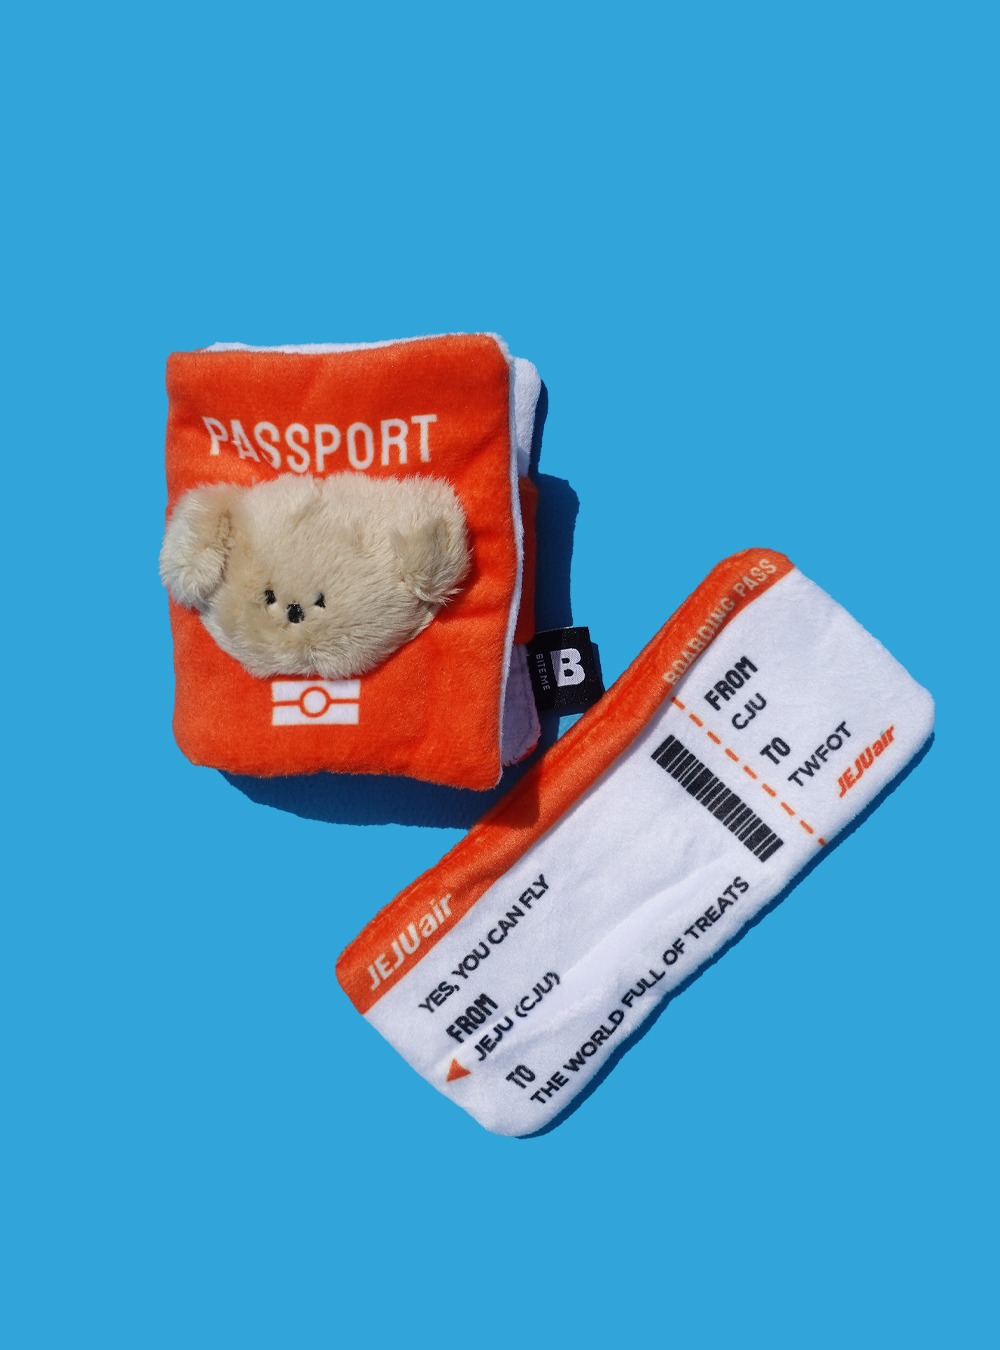 바잇미 여권&amp;항공권 장난감 셋트